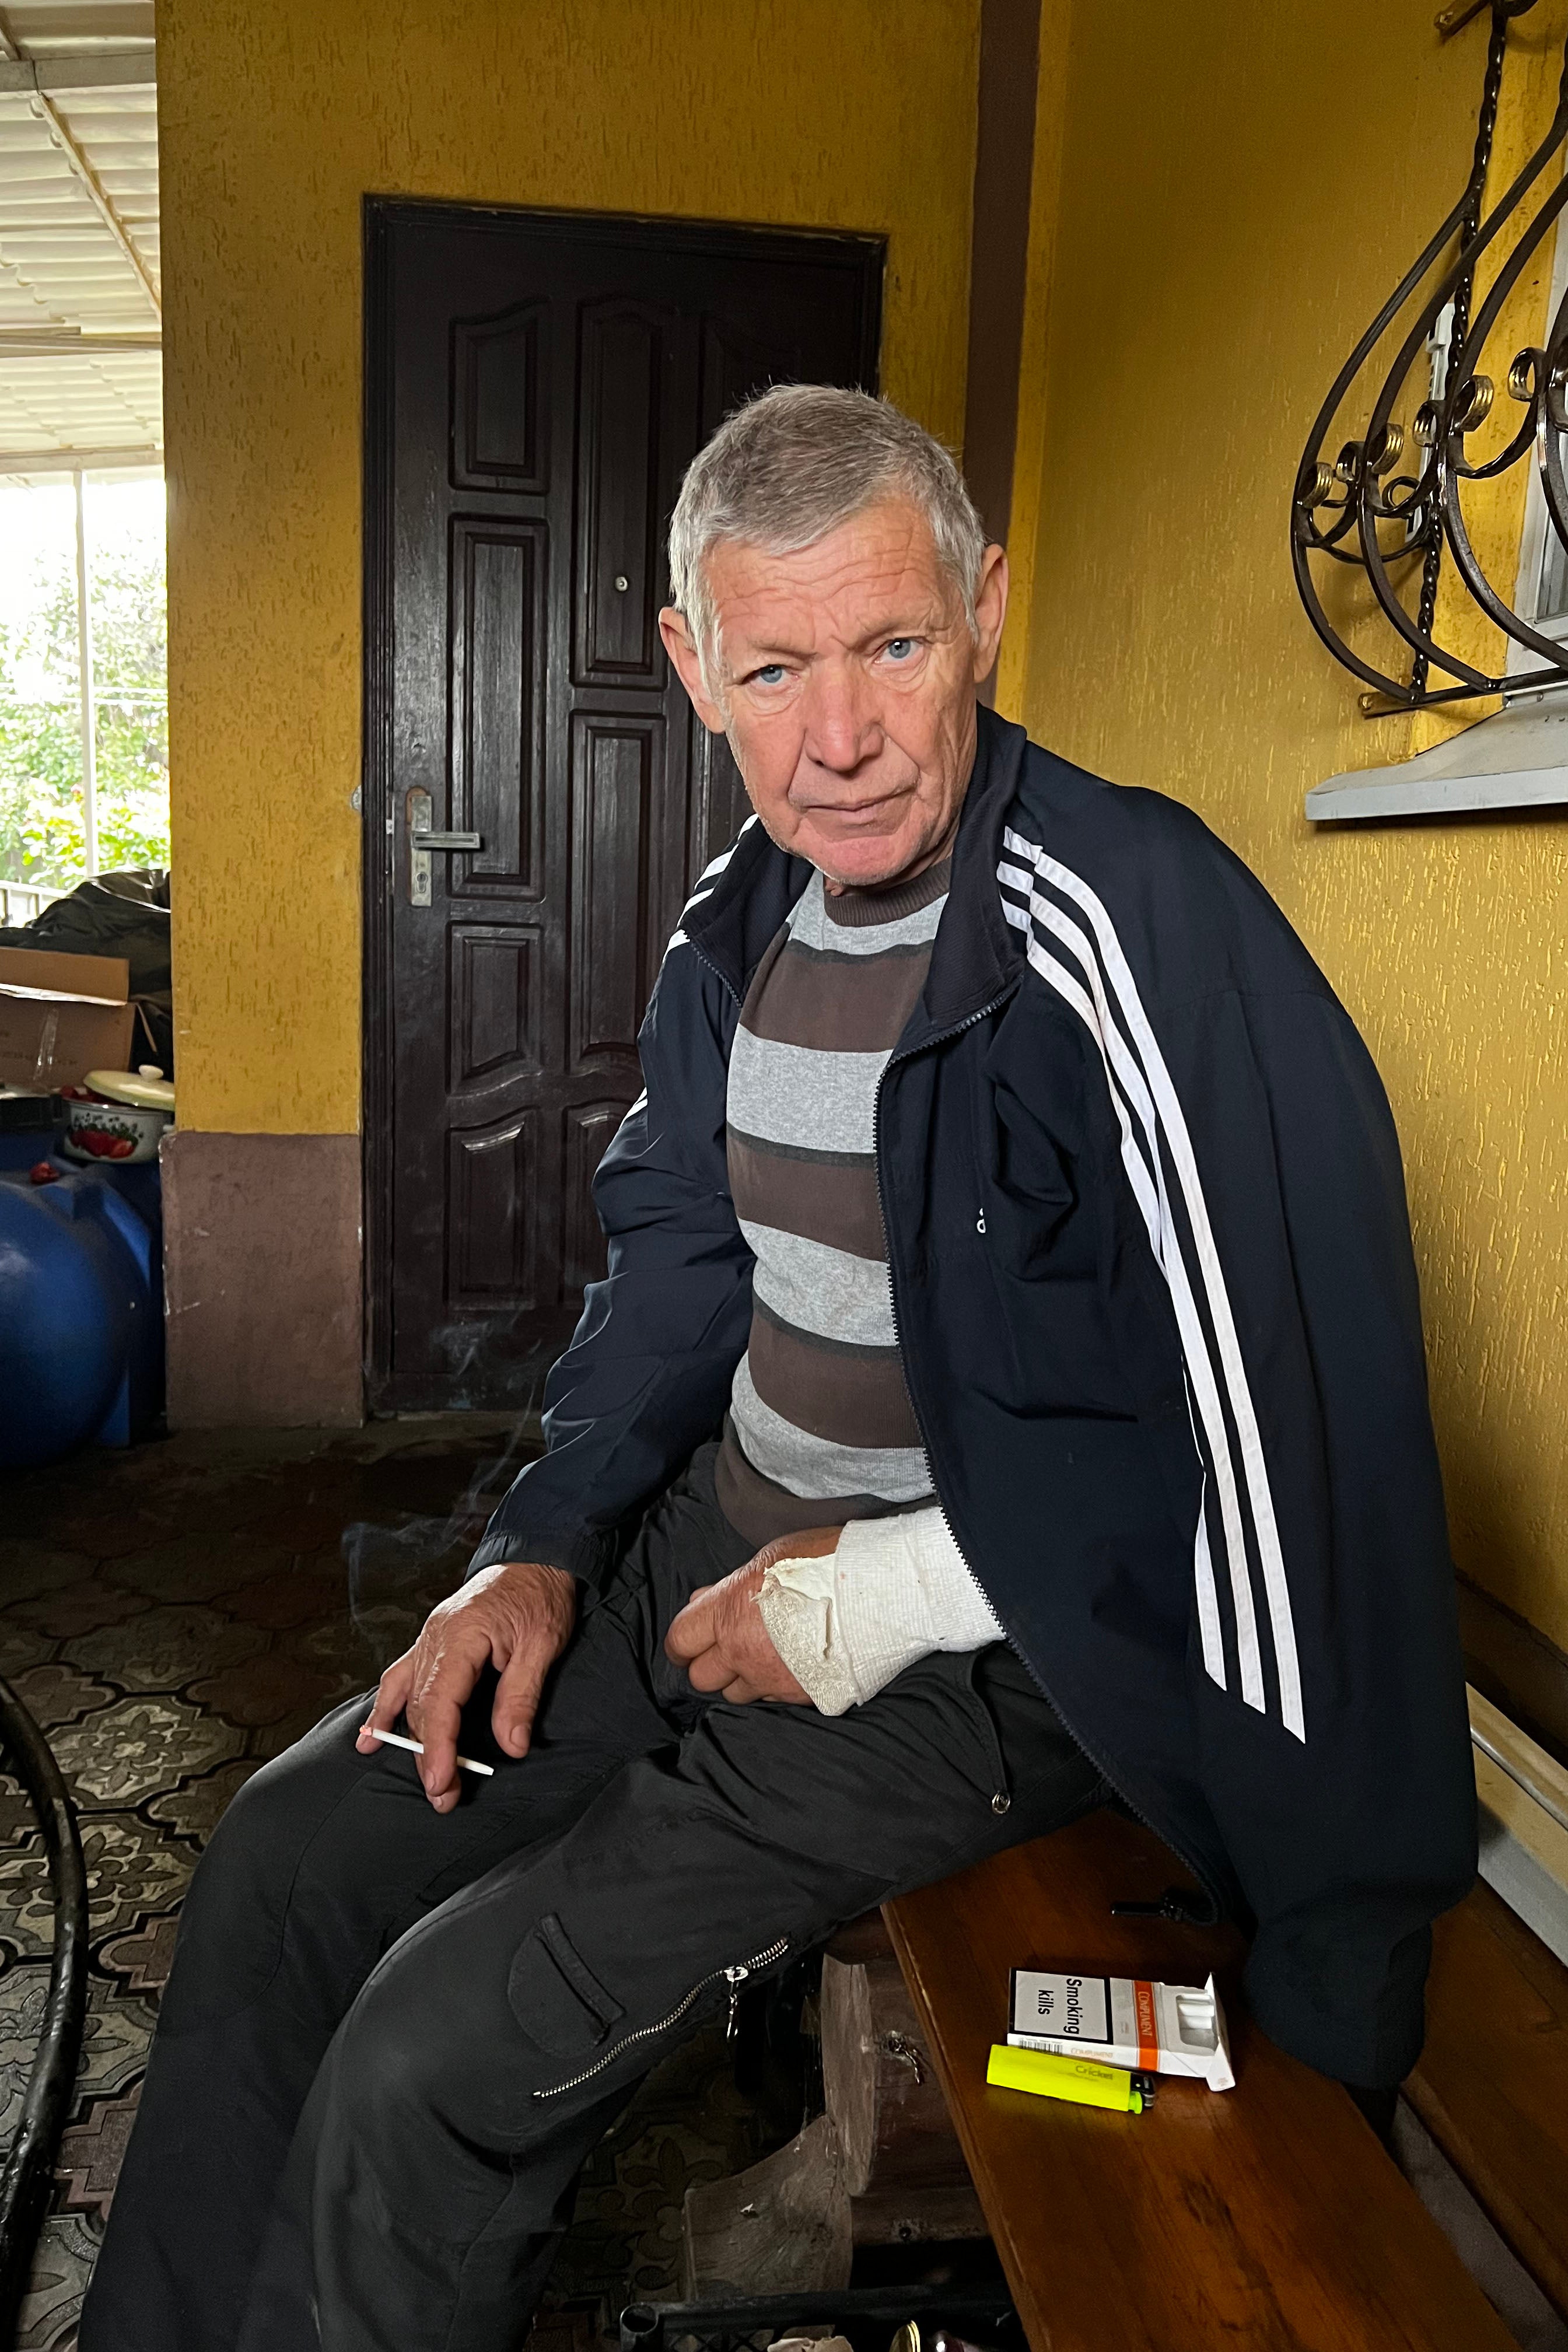 Mykhailo Ivanovych, 67 ans, a été détenu pendant 12 jours à la fin du mois d’août 2022, à Izioum, en Ukraine. Un soldat russe lui a cassé le bras gauche en le frappant violemment avec un tuyau en plastique, selon le témoignage de Mykhailo Ivanovych. Photo prise le 23 septembre 2022.